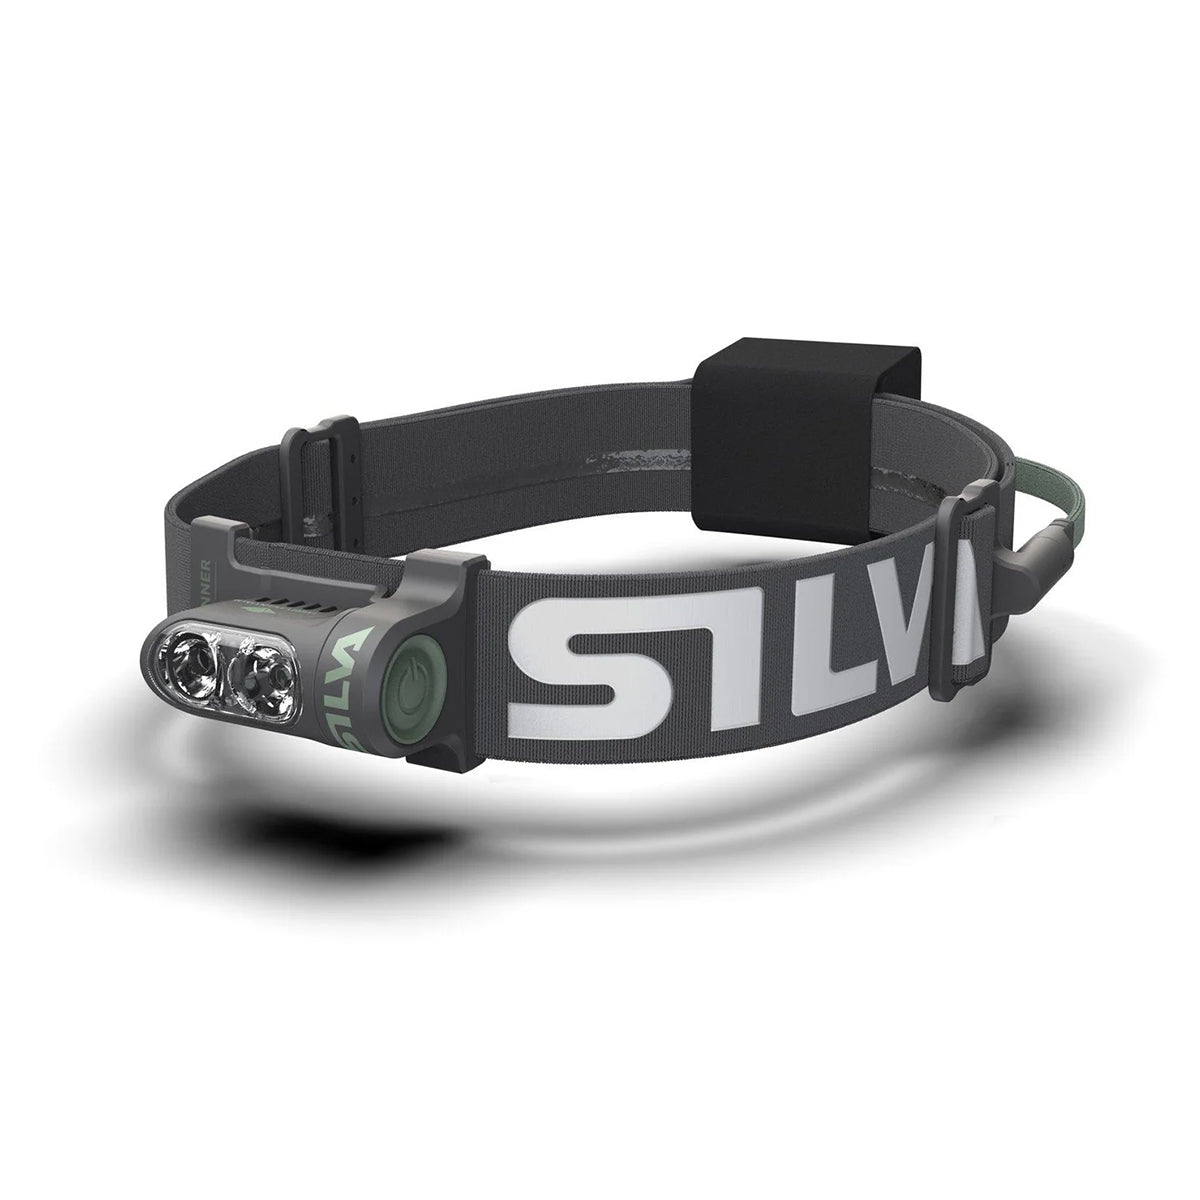 SILVA(シルバ) ヘッドランプトレイルランナー フリーH 37808, 黒 - 10